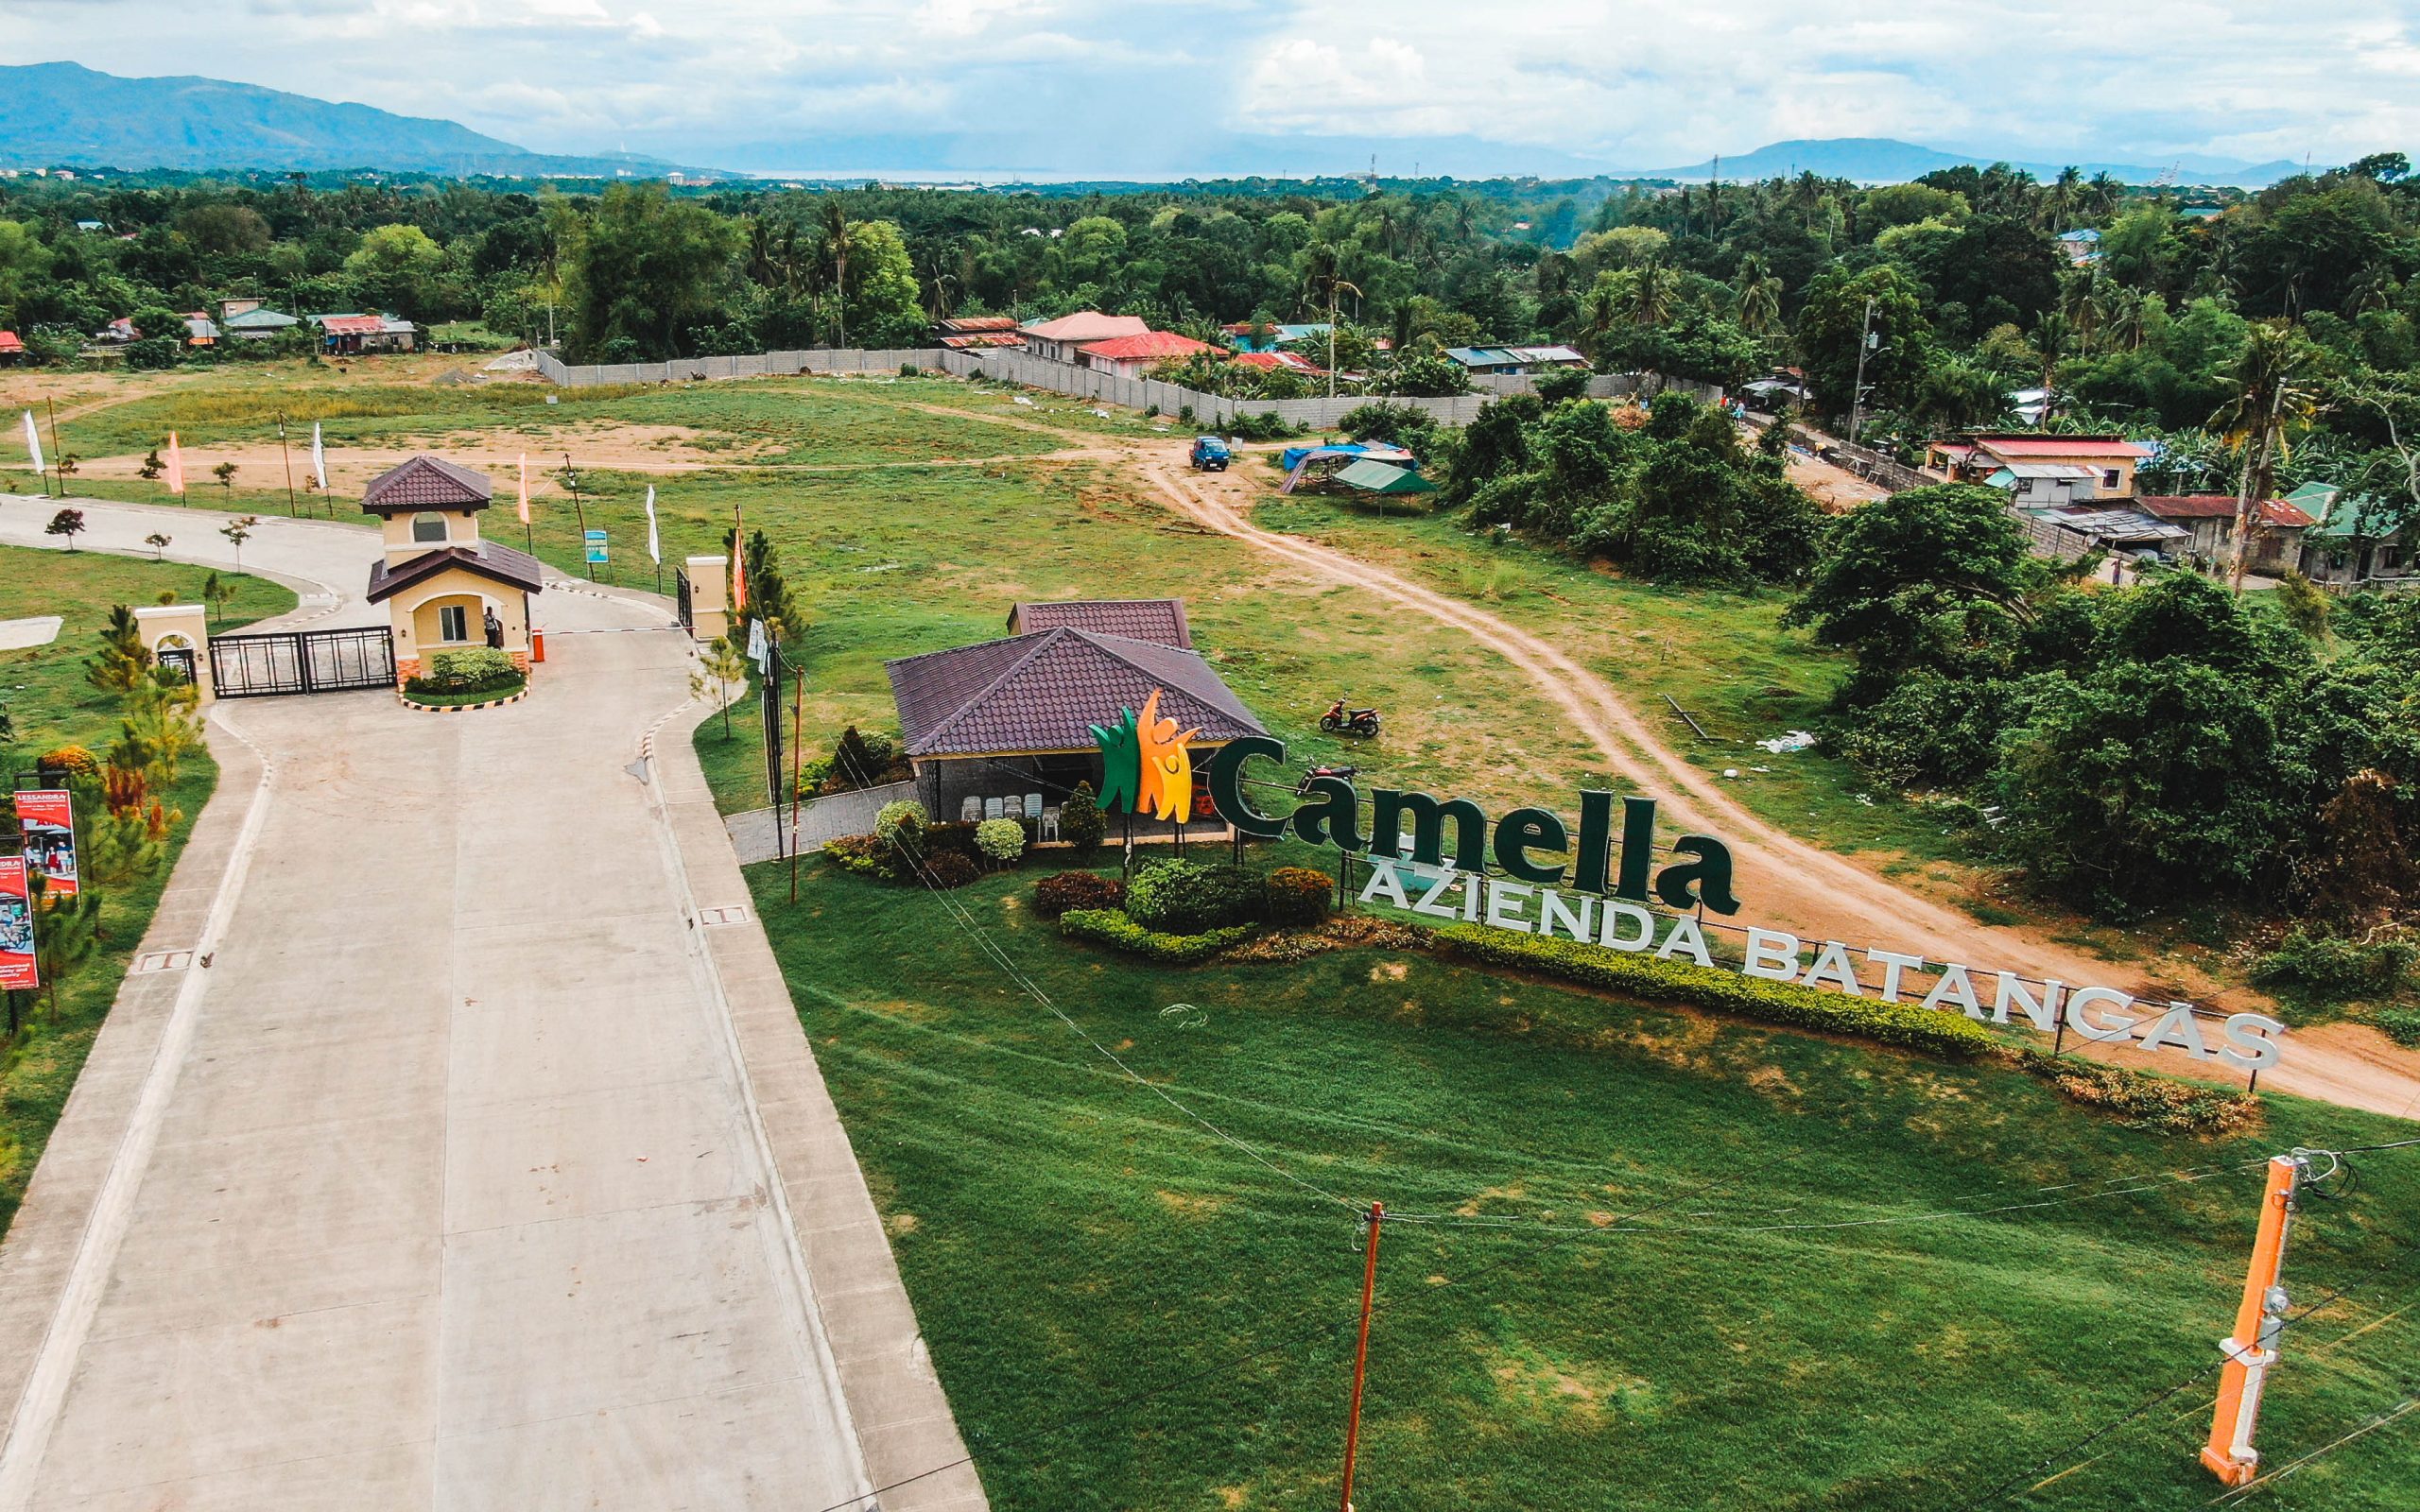 Camella Azienda Batangas Site Photo